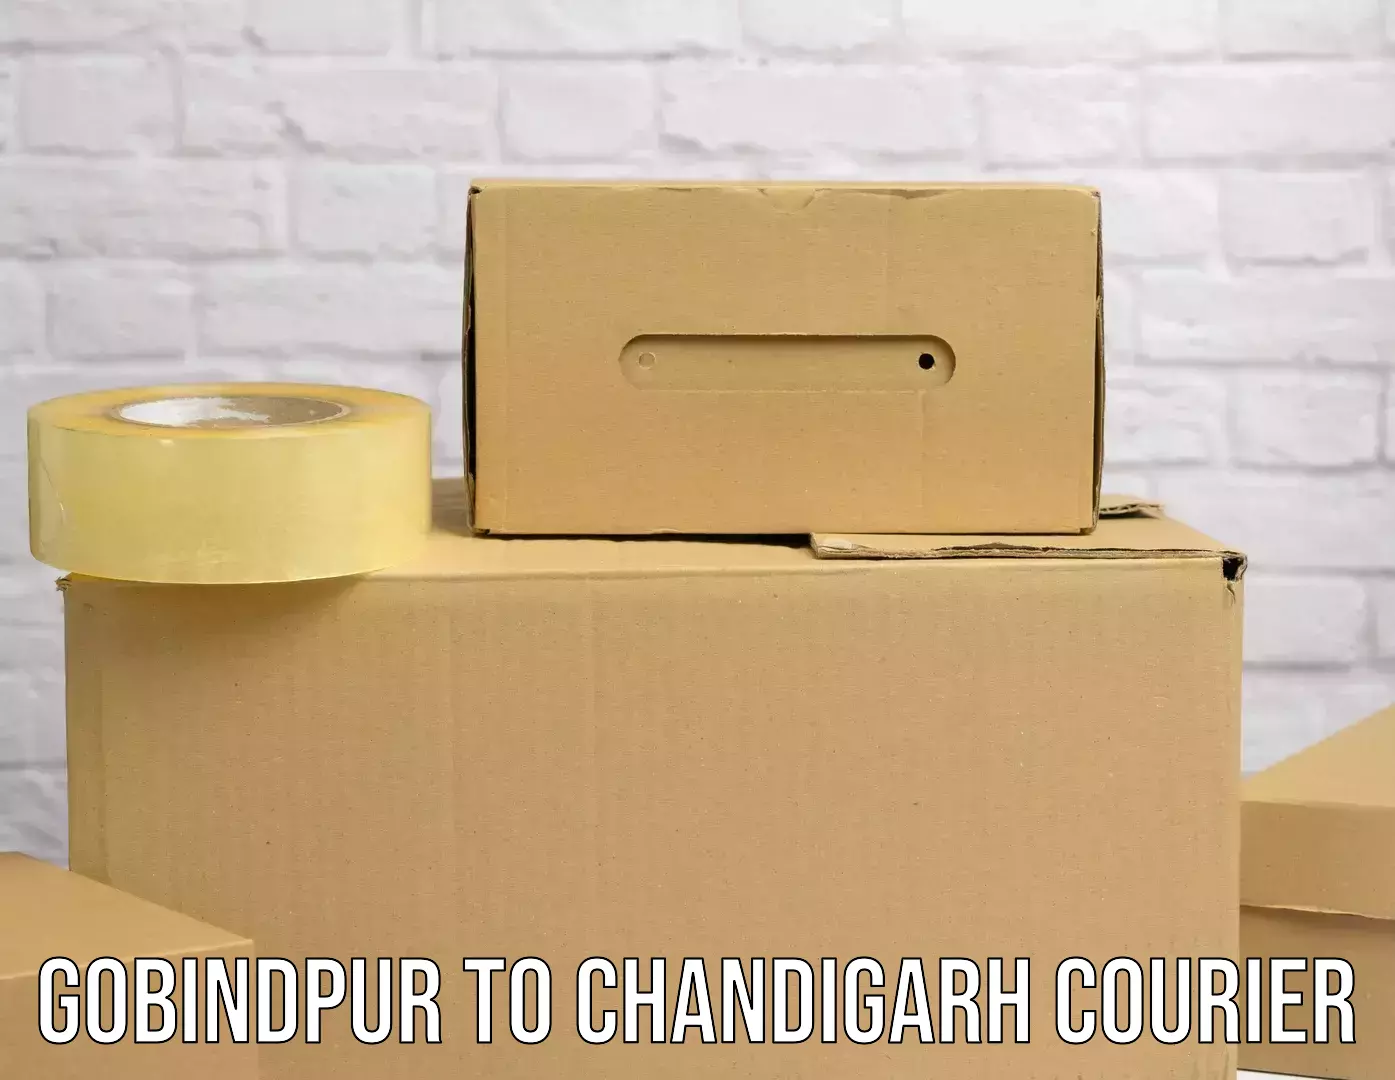 Next-generation courier services Gobindpur to Chandigarh